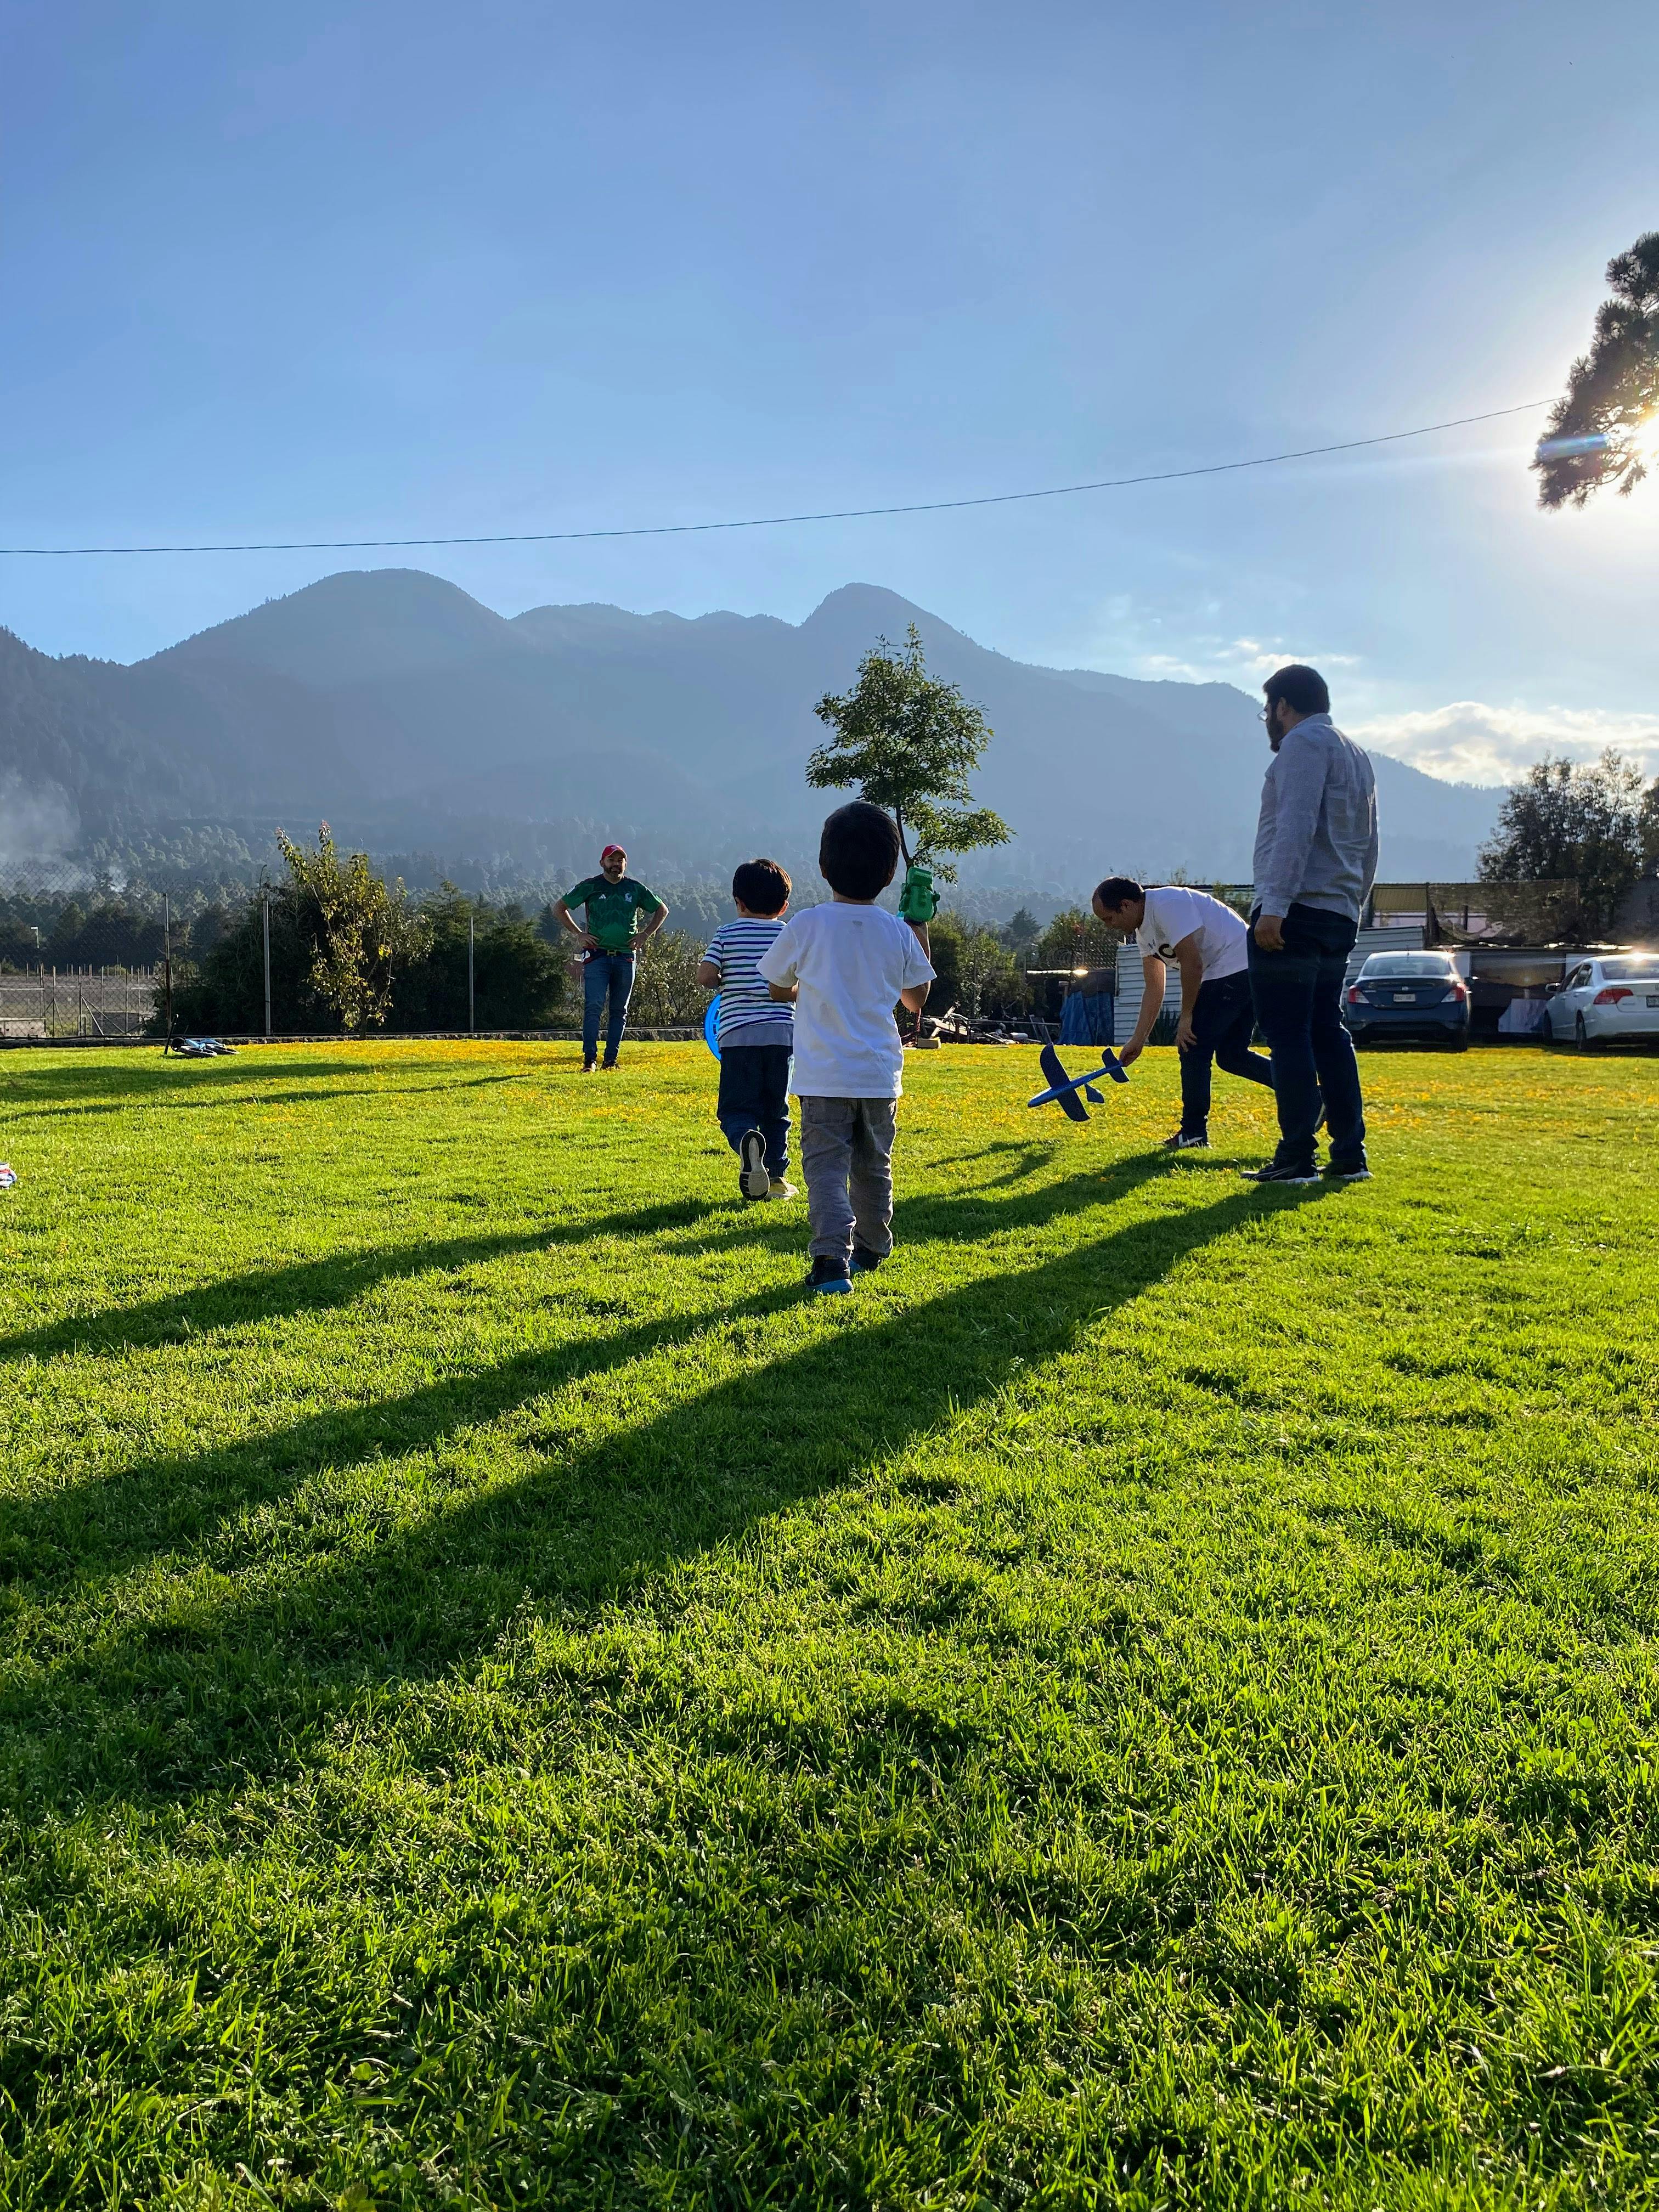 Fotografía de mis sobrinos jugando previo al atardecer en un patio muy grande.